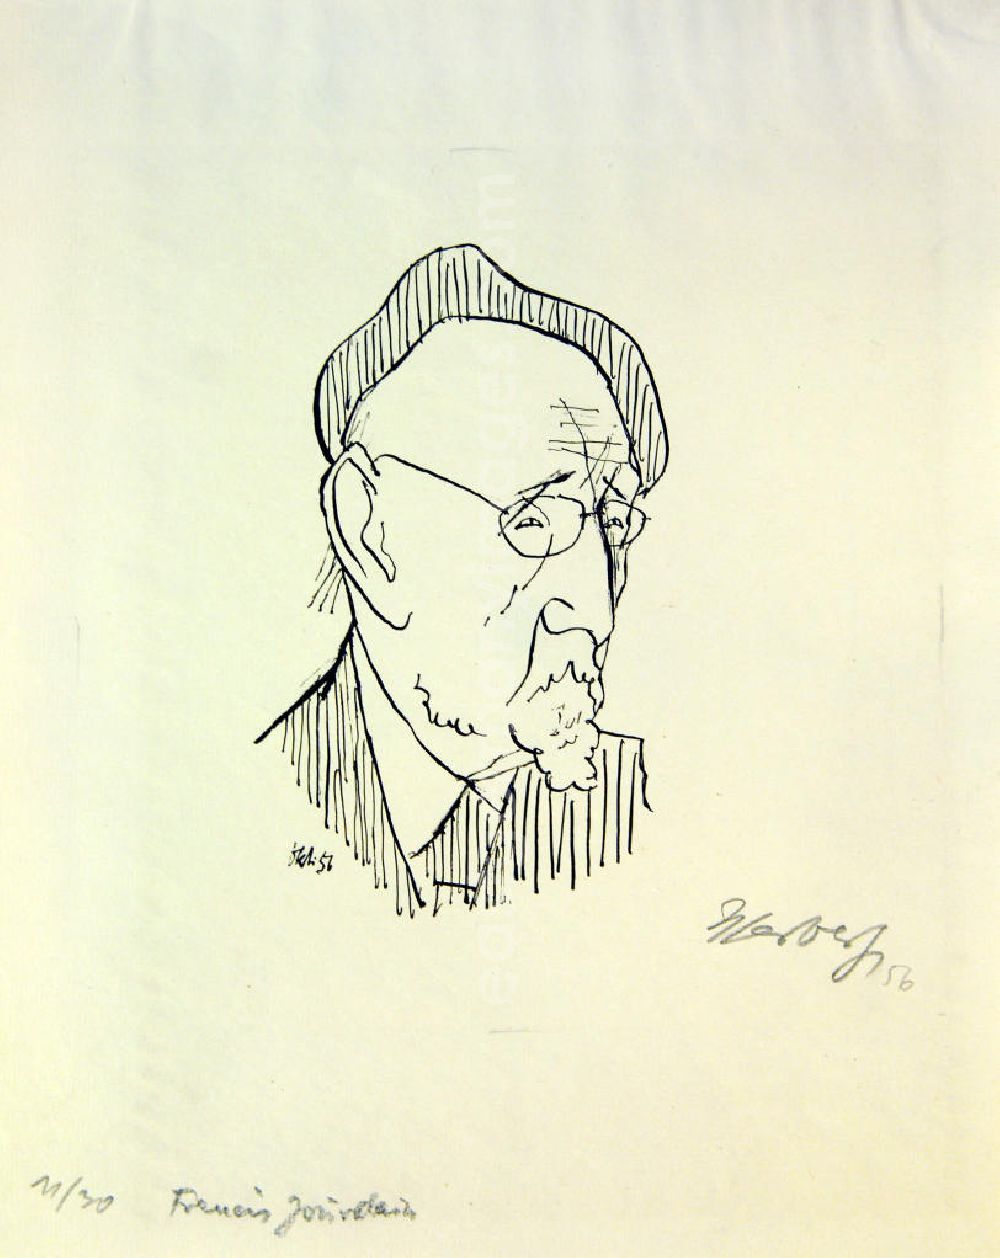 Berlin: Grafik von Herbert Sandberg über den französischen Kunstschriftsteller Francis Jourdain (*1876 †1958) Francis Jourdain aus dem Jahr 1956, 16,5x9,5cm Lithographie, handsigniert, 11/3